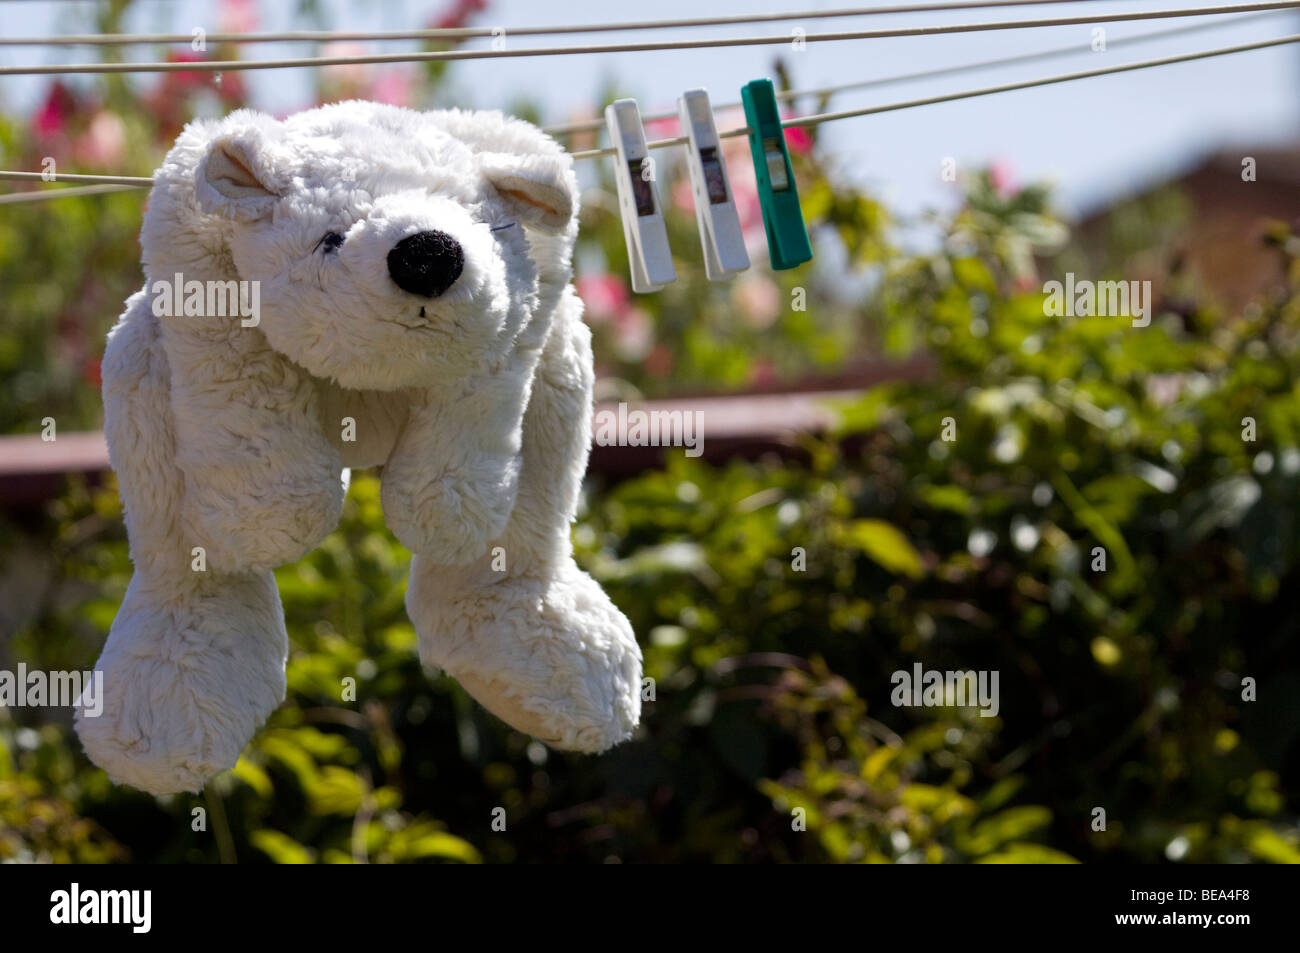 Polar bear teddy drying on a clothes line. Stock Photo